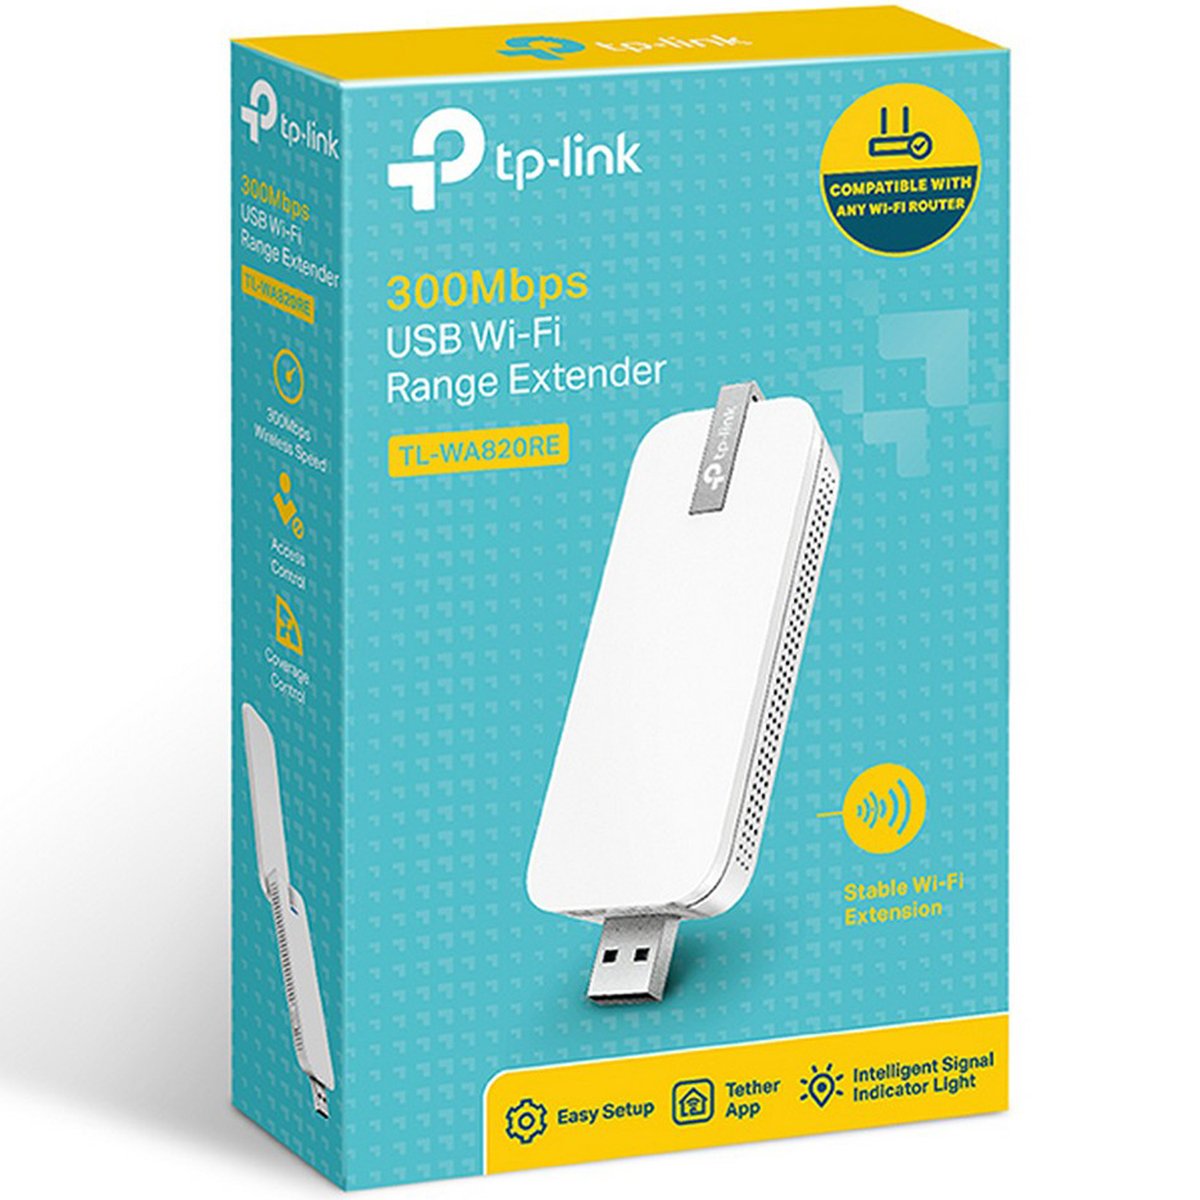 TPLink 300Mbps USB Wi-Fi Range Extender WA820RE